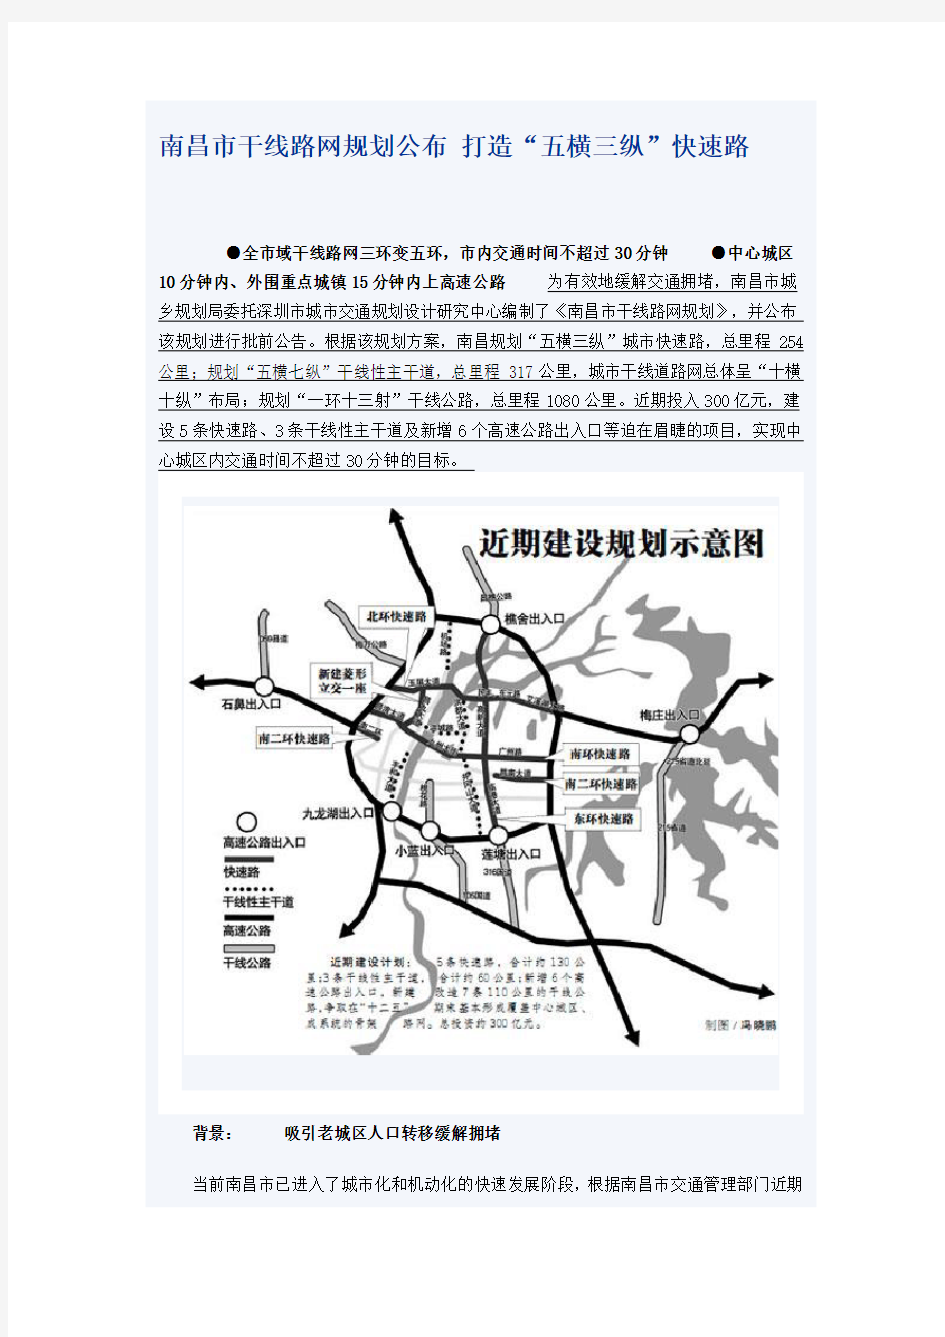 南昌市干线路网规划公布 打造“五横三纵”快速路